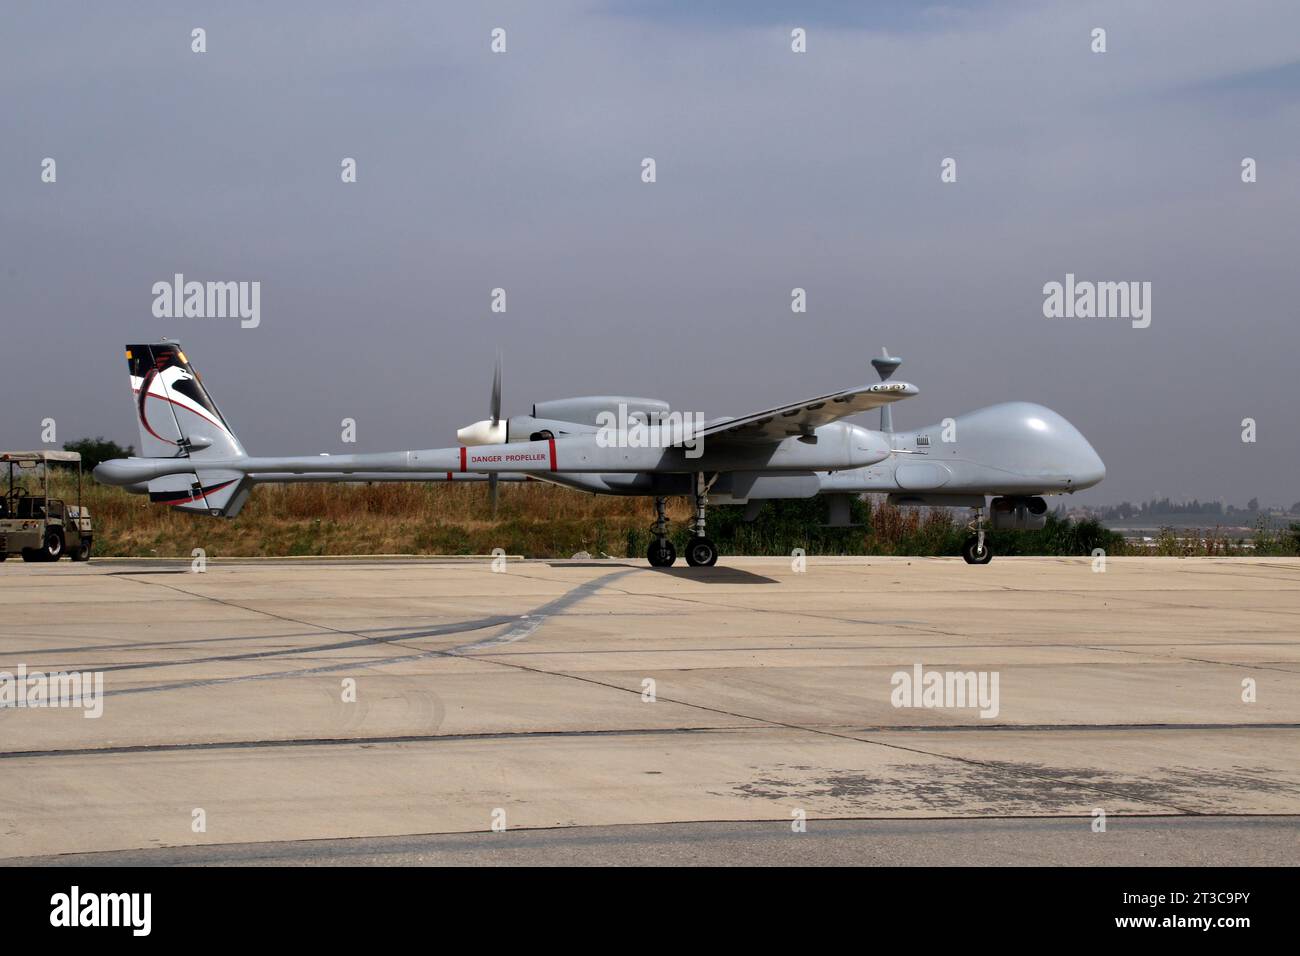 Un UAV des Forces de défense israéliennes Heron TP (Eitan) prêt à décoller. Banque D'Images